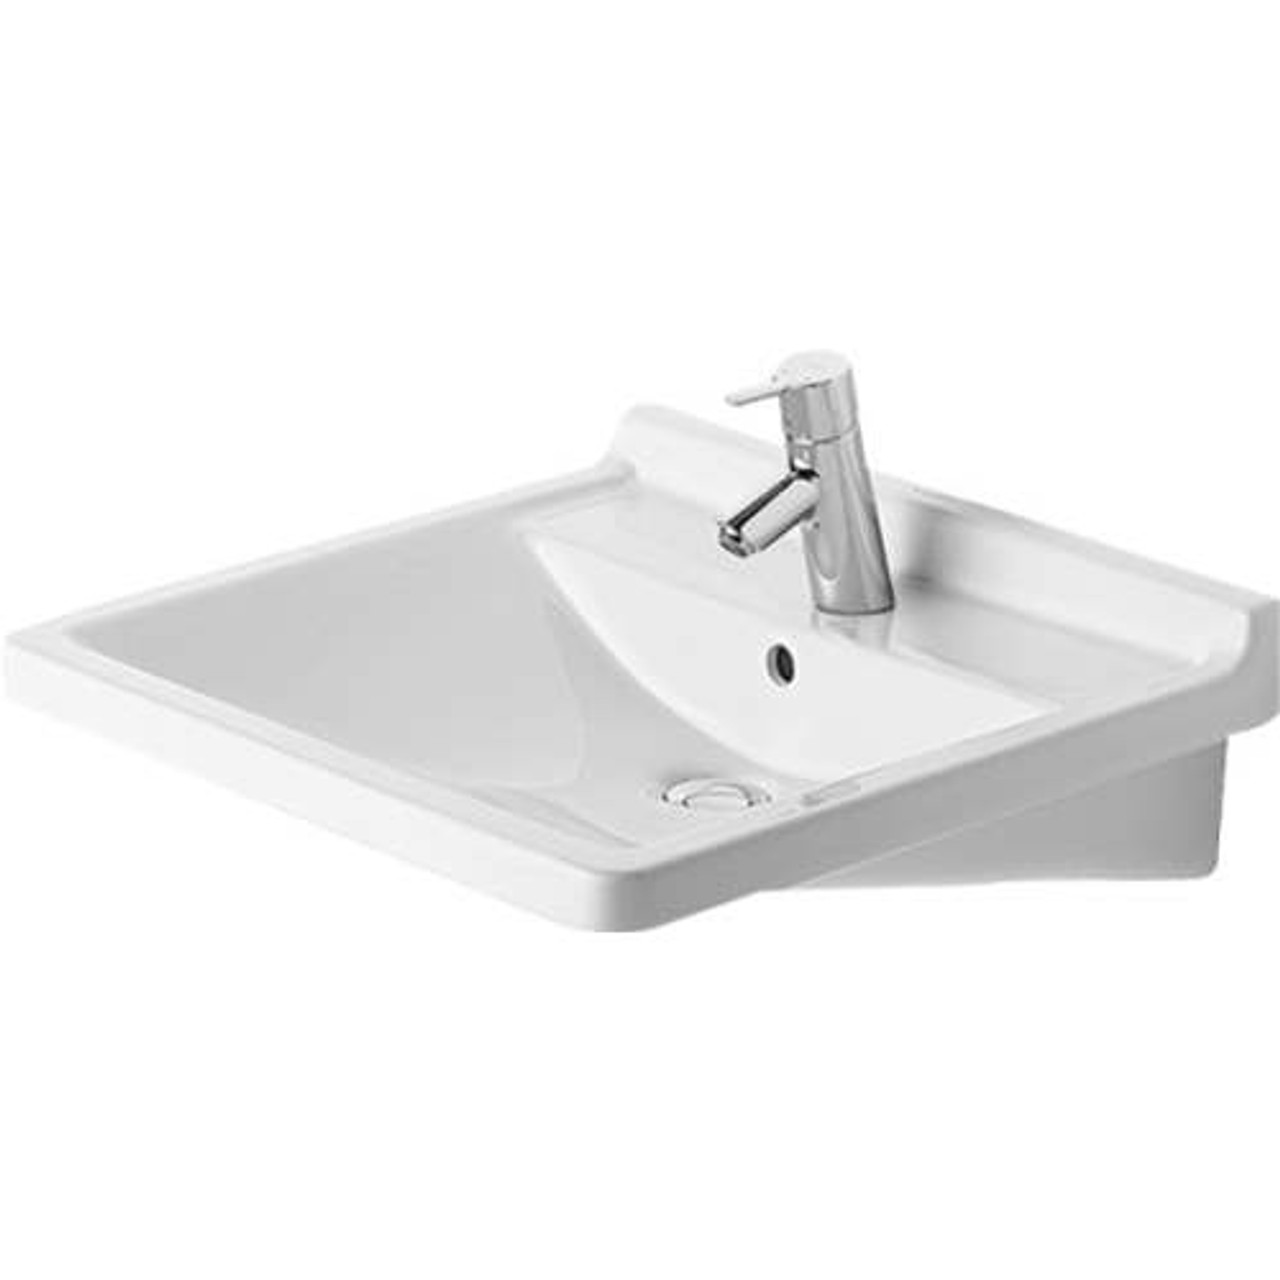 Duravit Starck Undermount Ceramic Bathroom Sink 0309600000 White Alpin